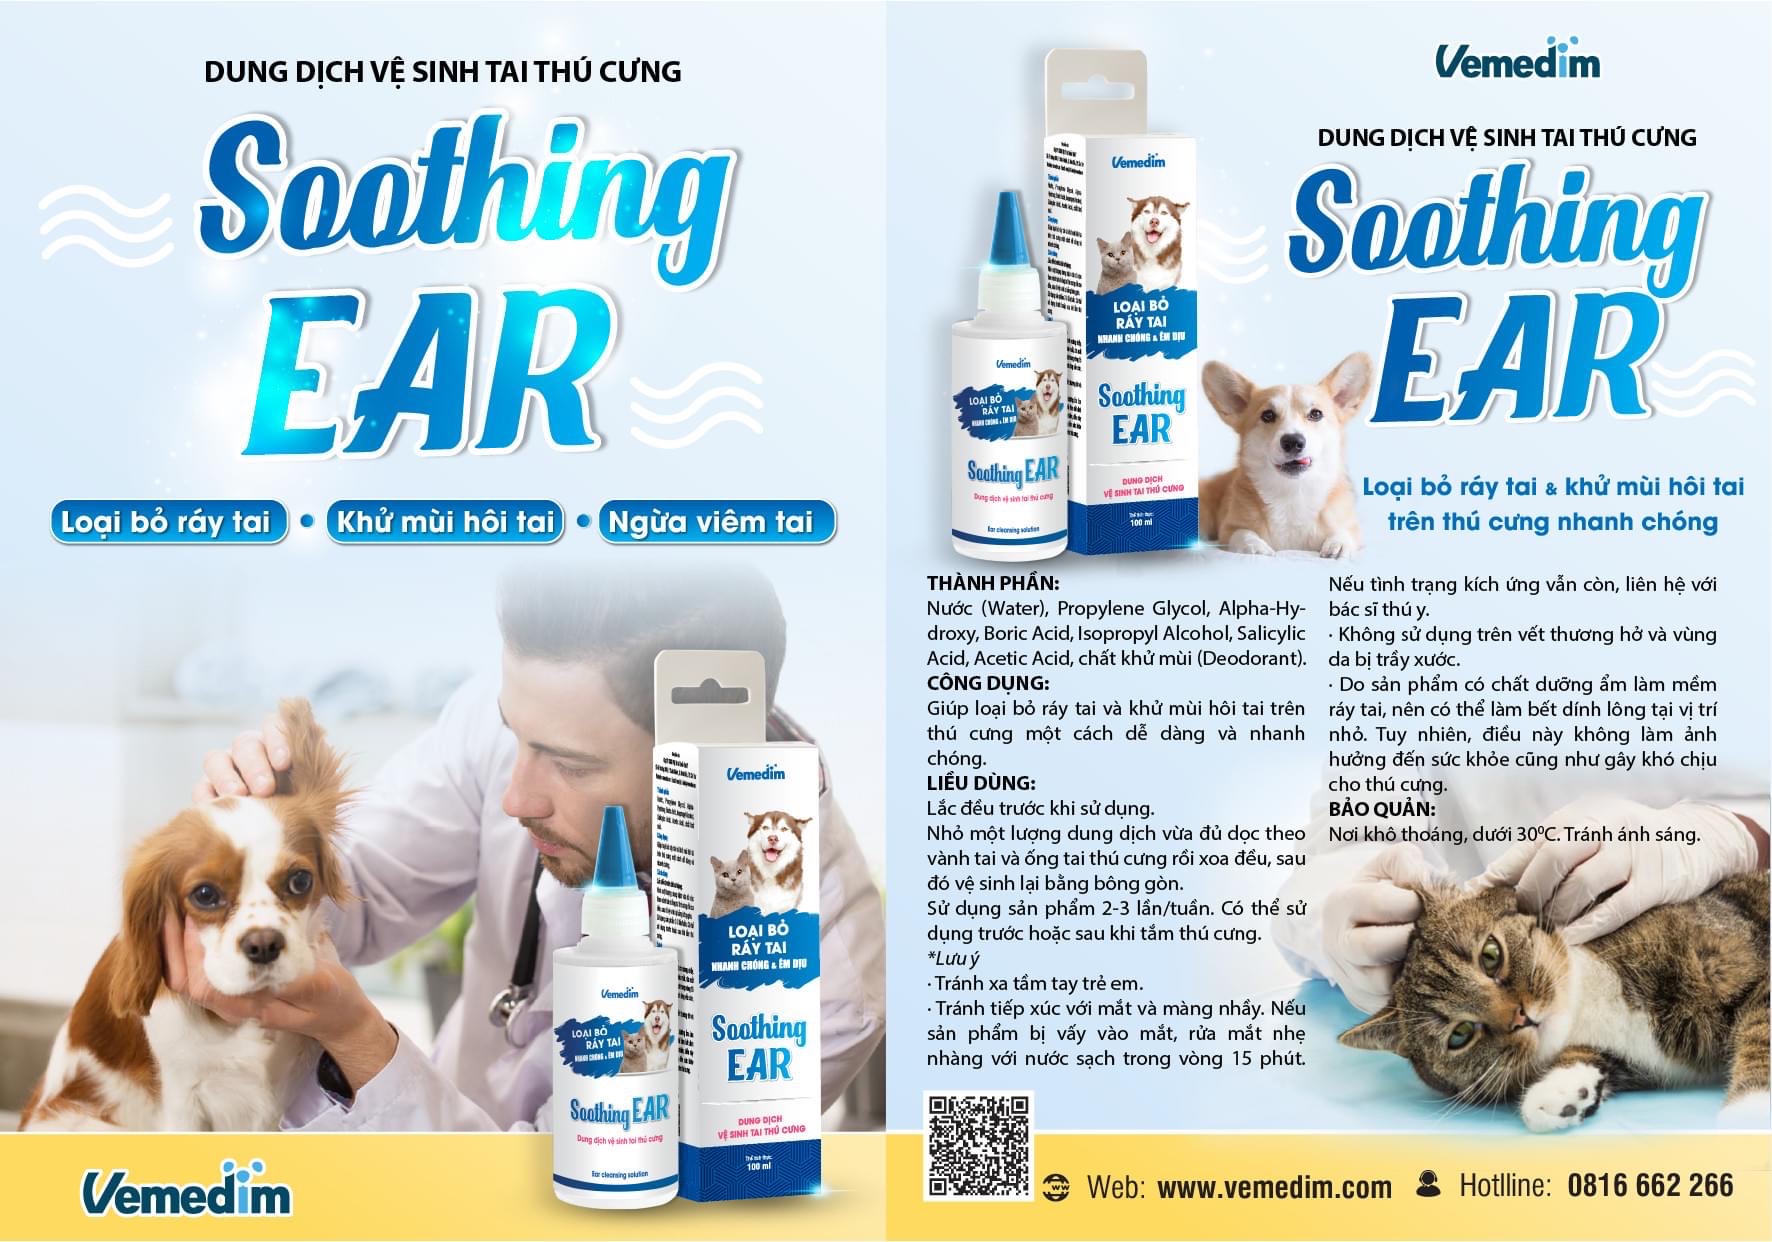 Soothing EAR - Dung dịch vệ sinh tai thú cưng, loại bỏ ráy tai chó mèo